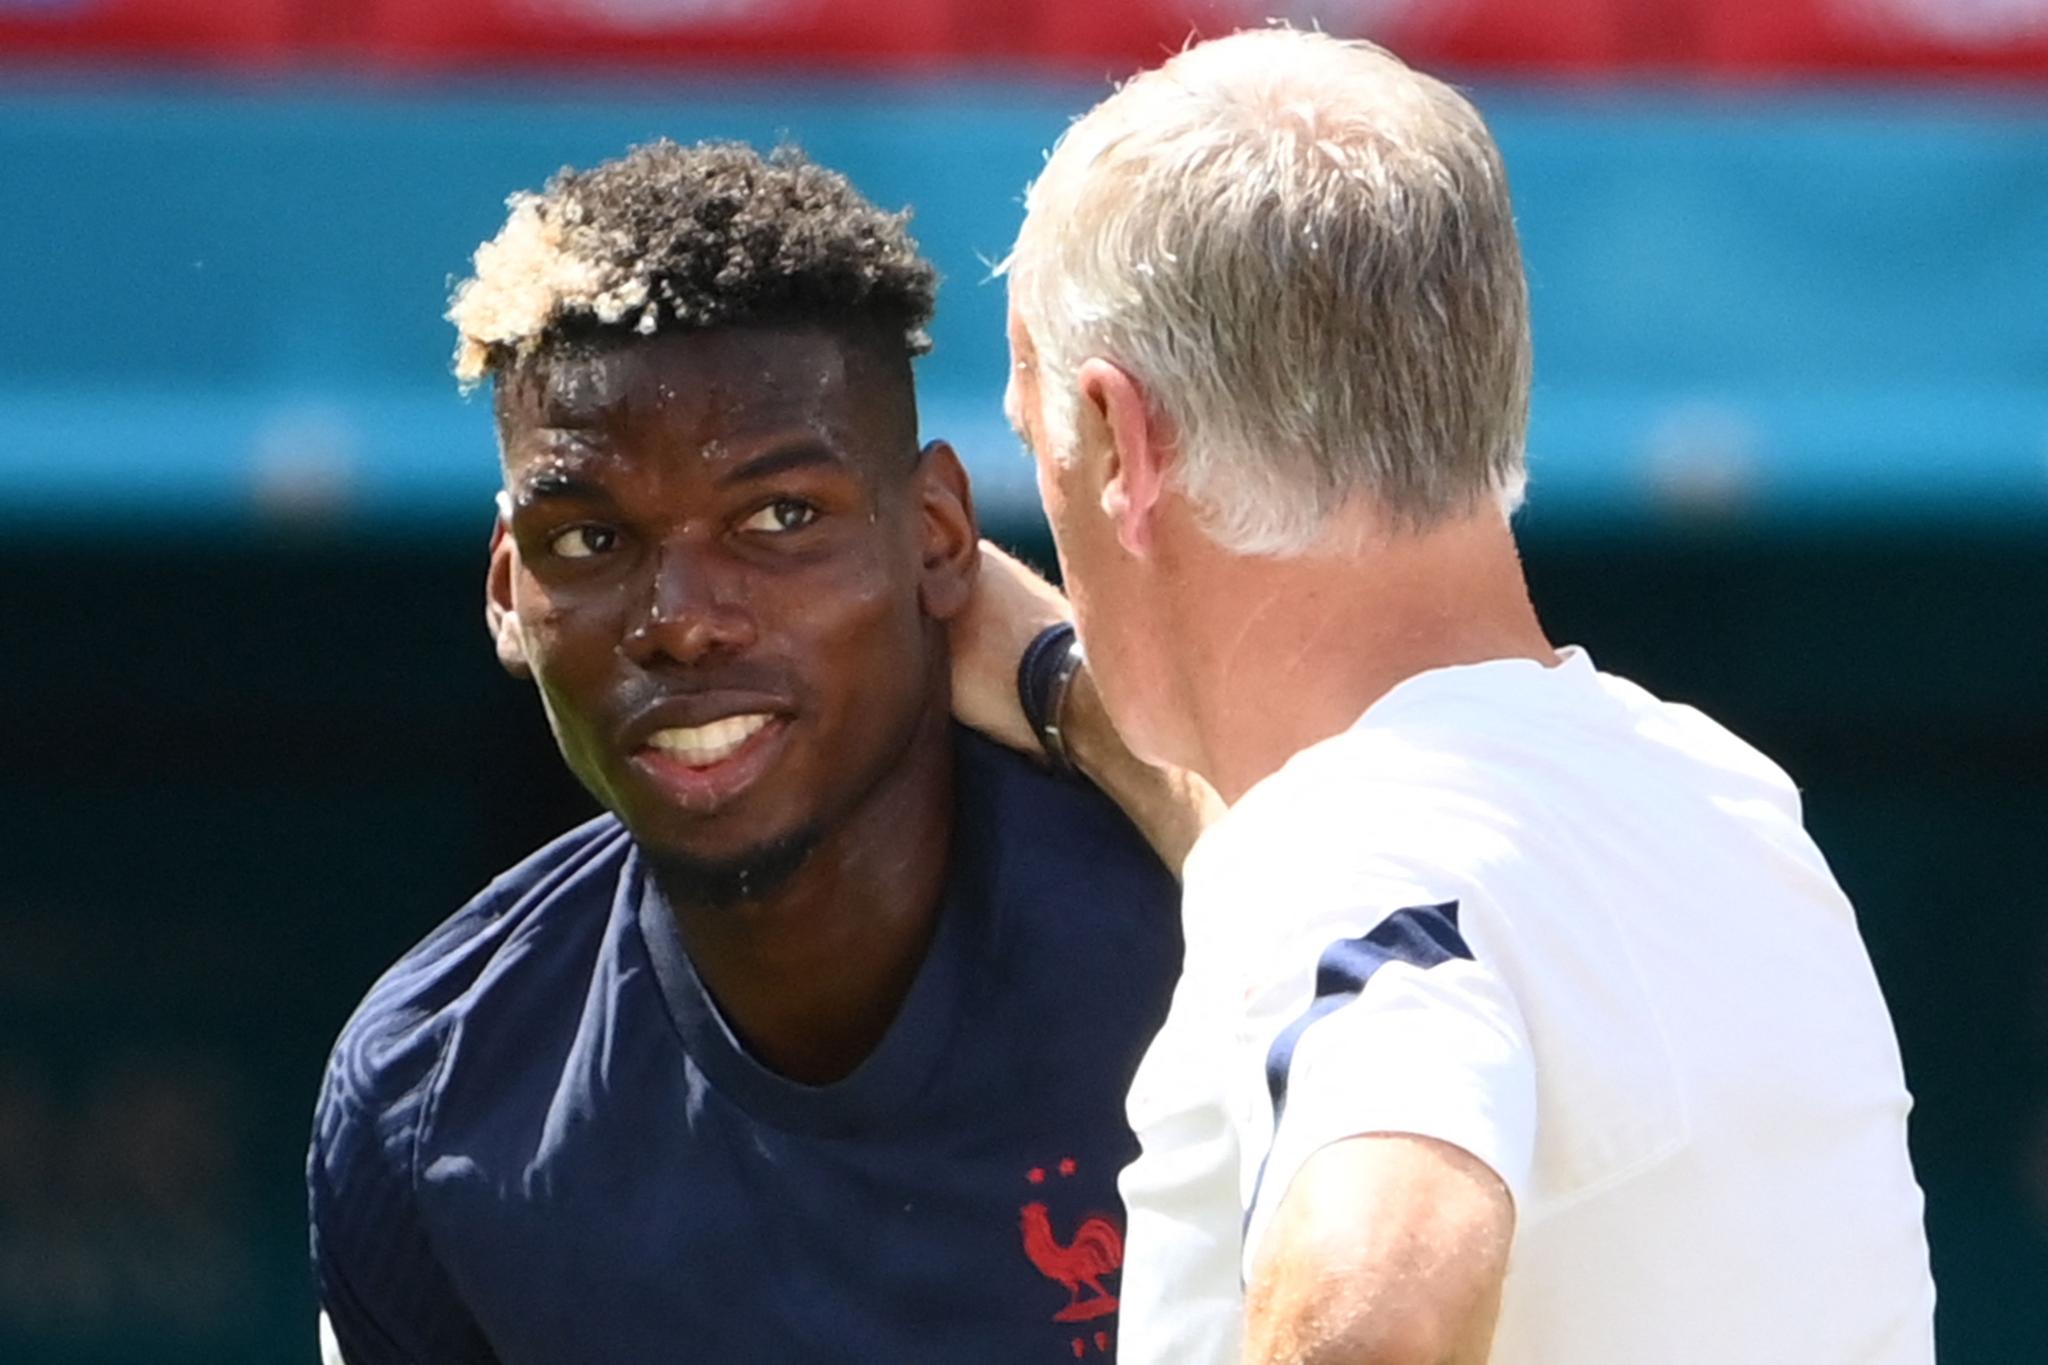 BLOMSTRER: Paul Pogba viser seg fra en annen side under Didier Deschamps på det franske landslaget enn han gjør i Manchester United.